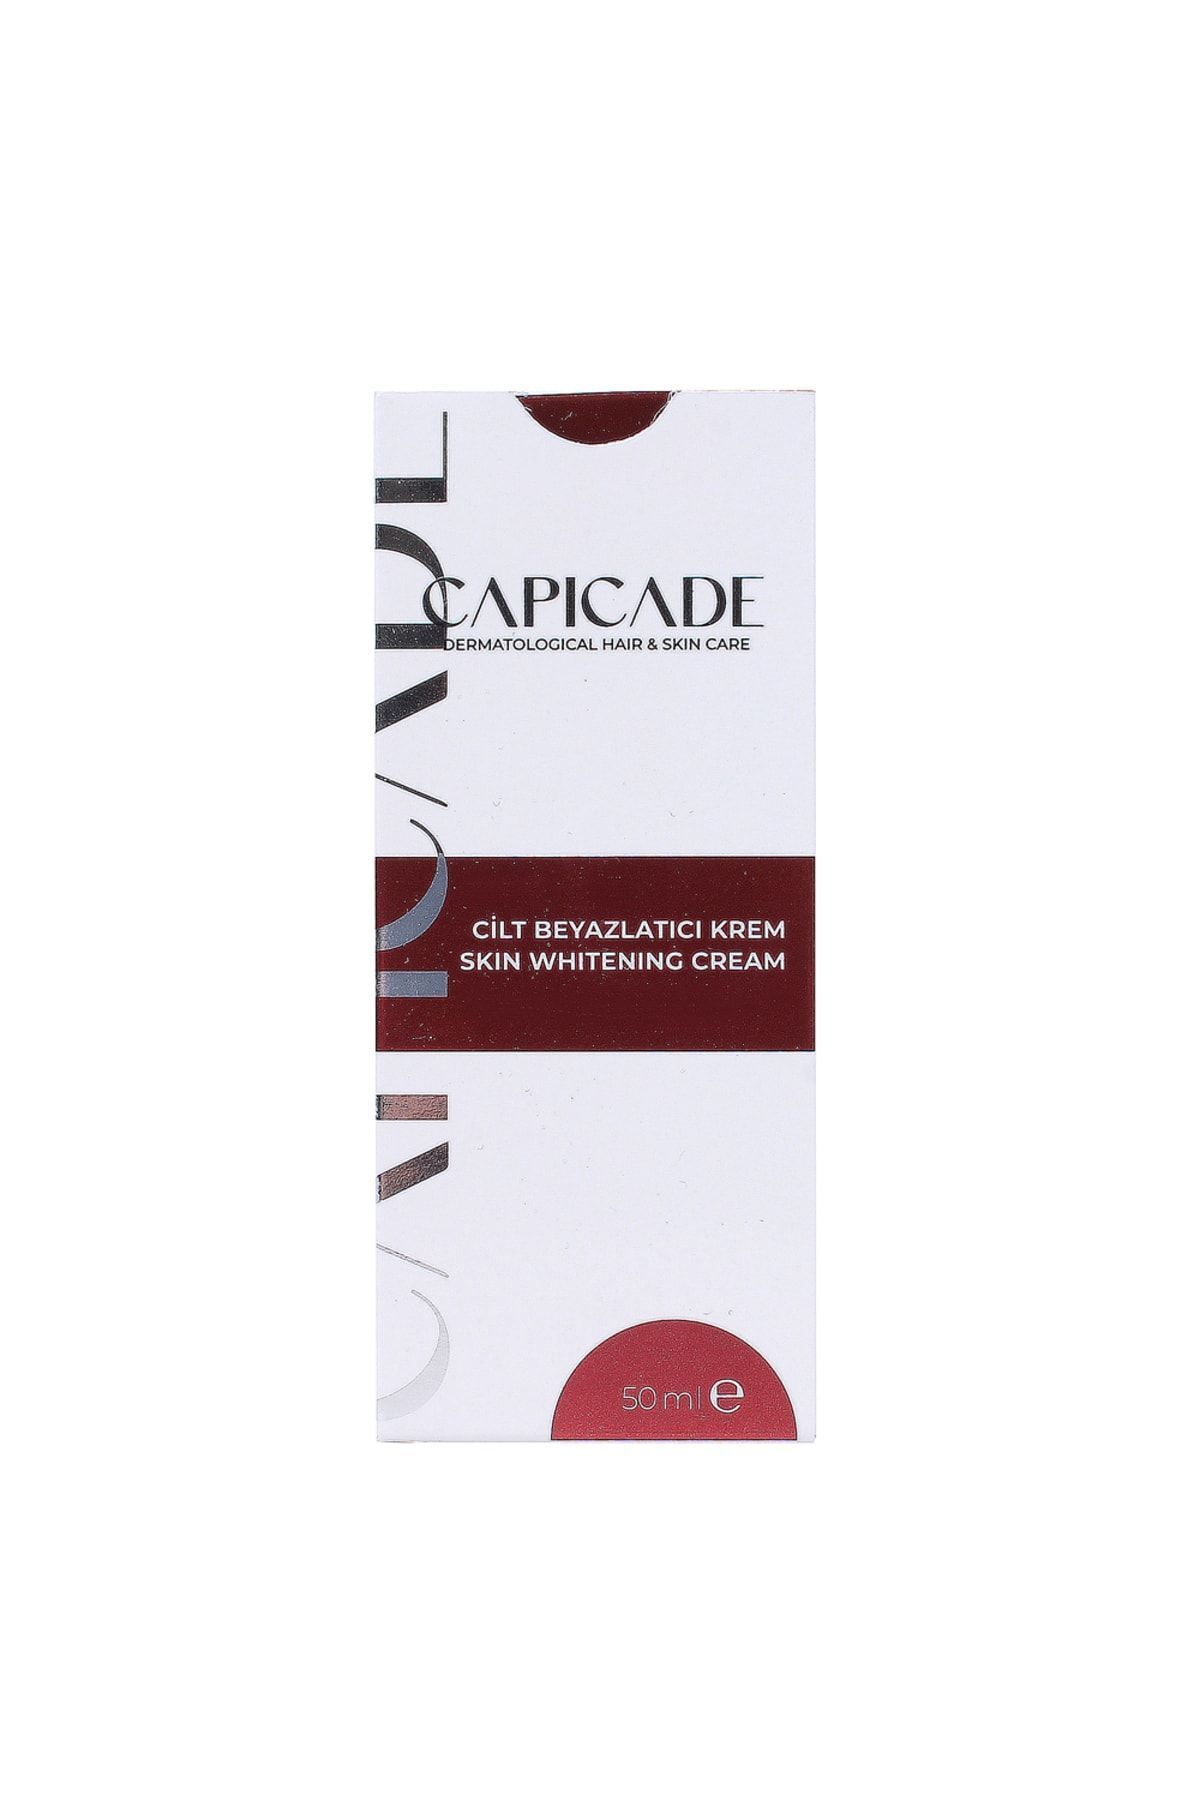 Capicade Cilt Beyazlatıcı Krem Skin Whitening Cream 50 ml